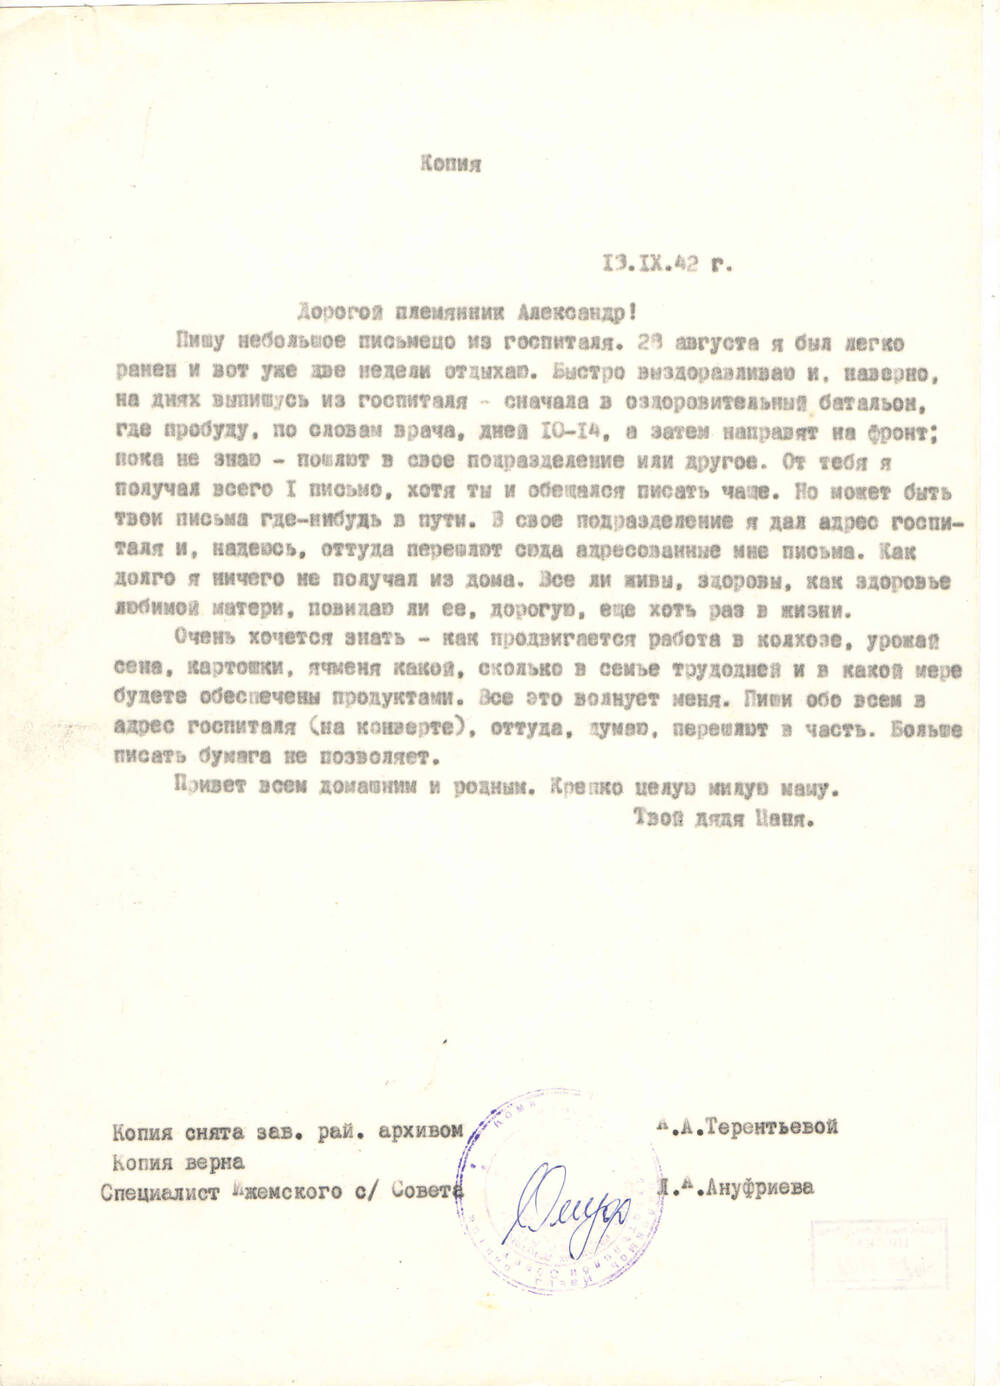 Копия письма с госпитатели Терентьева И.М. племяннику Александру от 13.09.1942 года (оригинал хранится в Ижемском архиве)